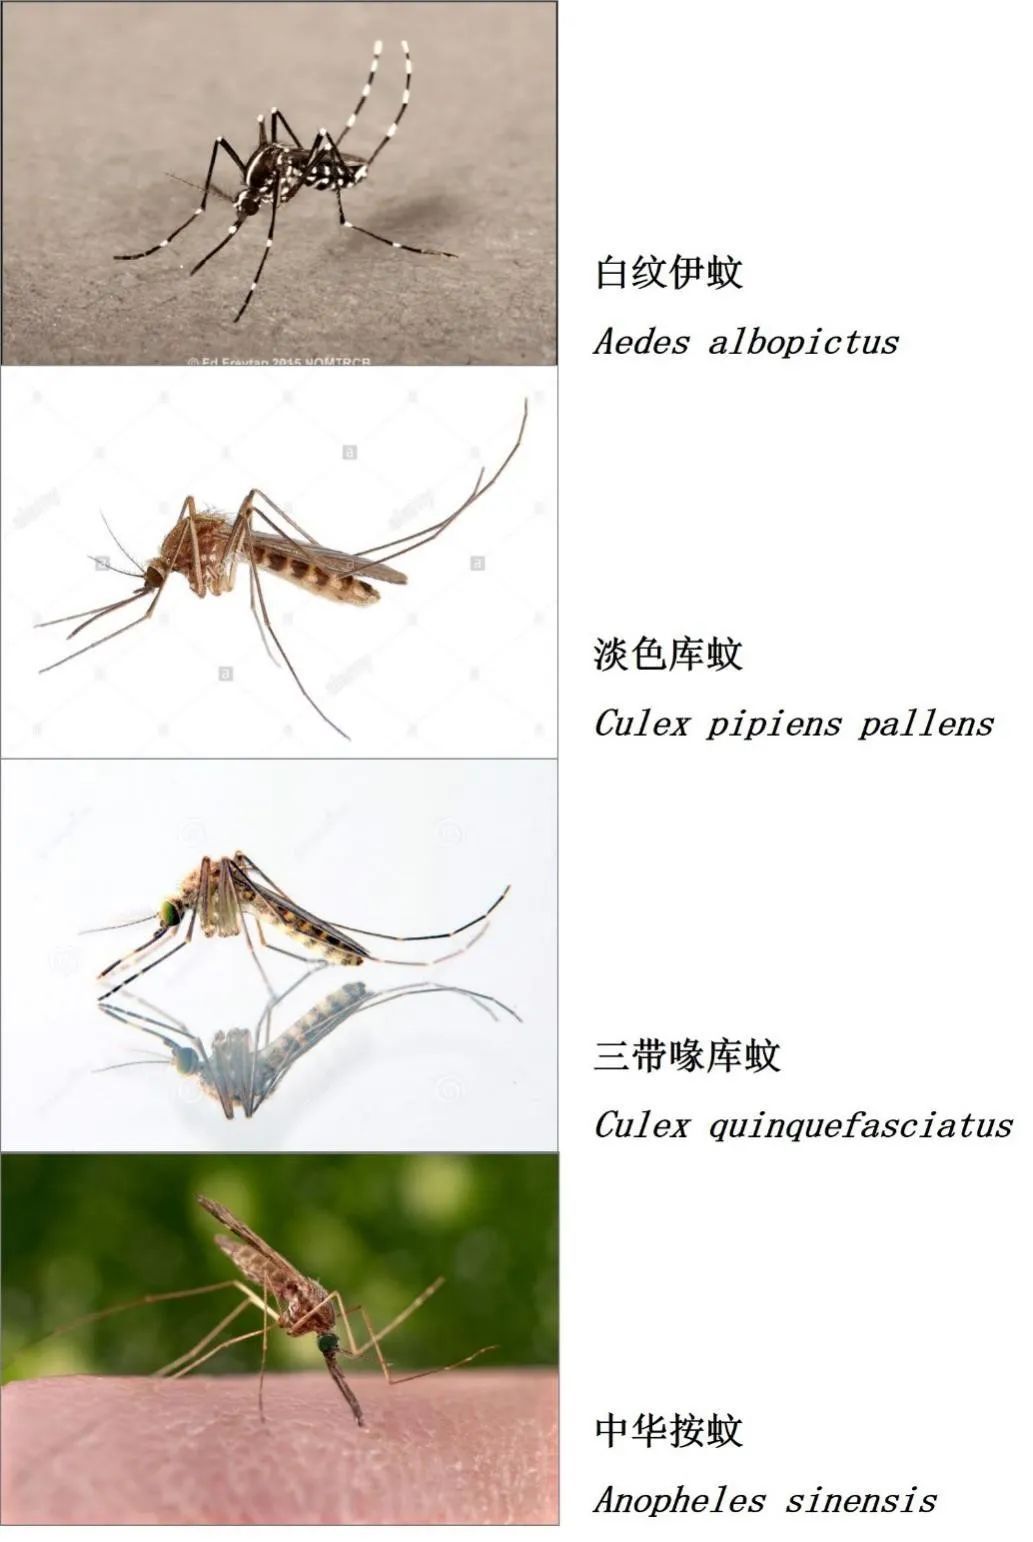 淡色库蚊 俗称"家蚊",可以传播丝虫病,晚上睡觉时在耳边嗡嗡响的大